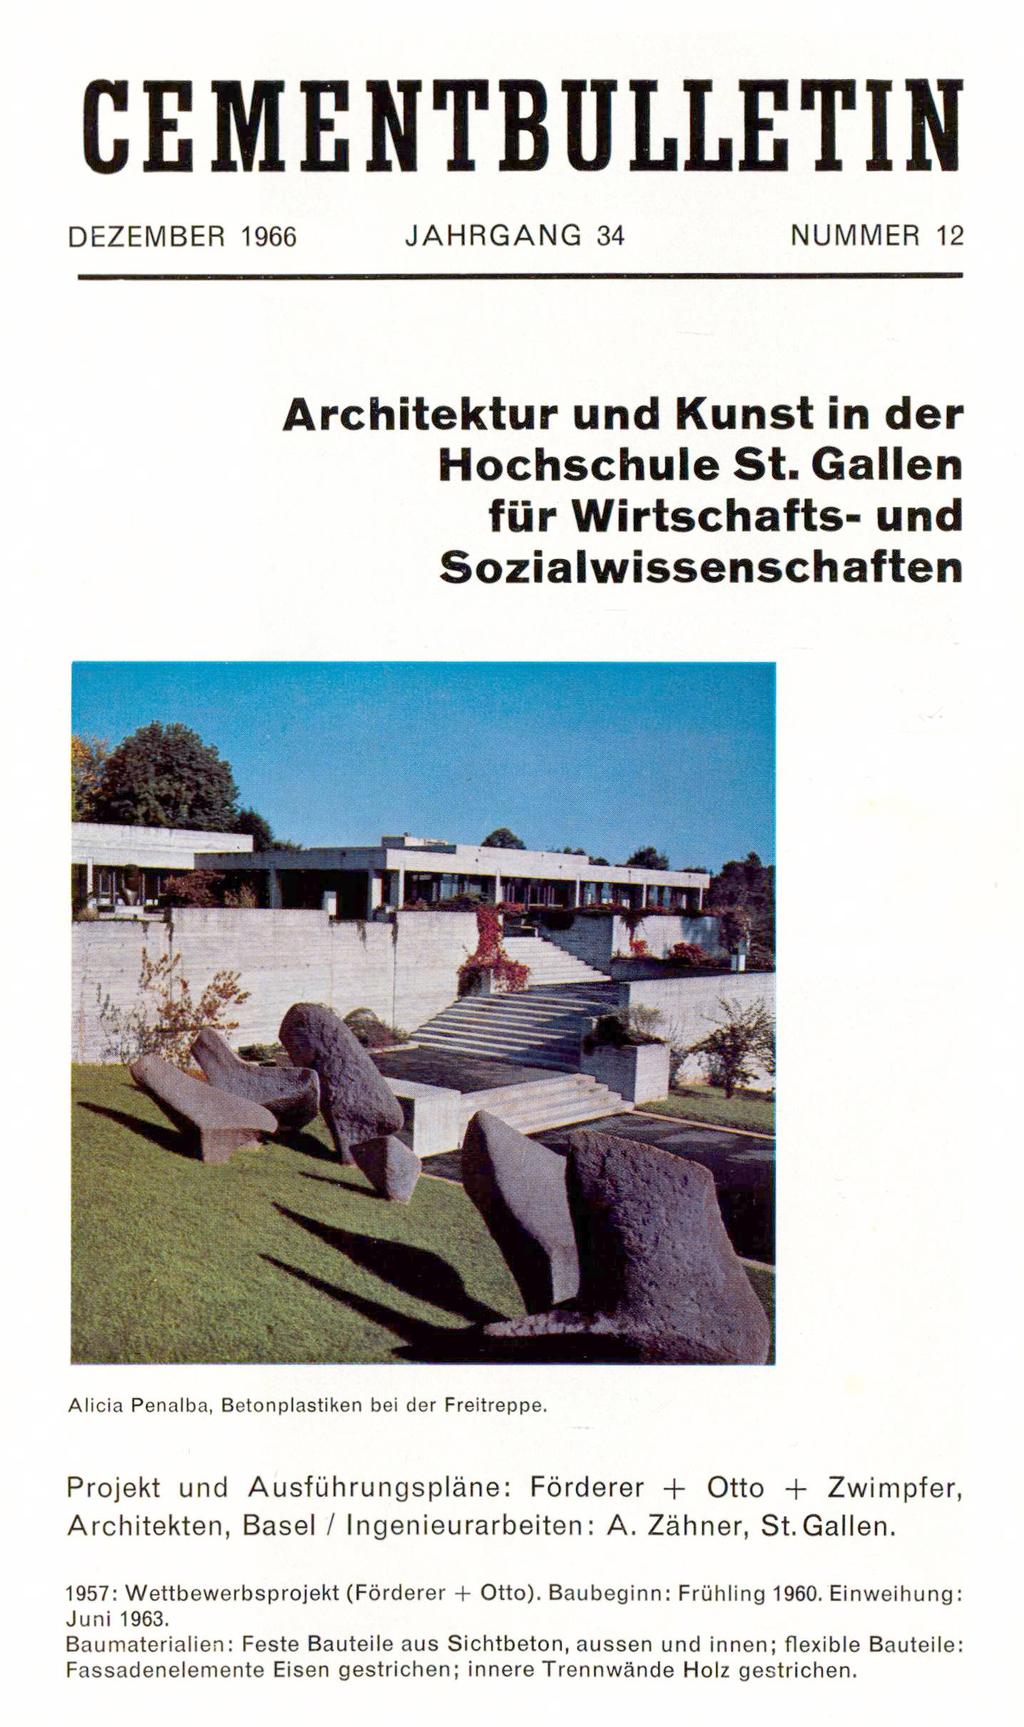 CEMENTBULLETIN DEZEMBER 1966 JAHRGANG 34 NUMMER 12 Architektur und Kunst in der Hochschule St. Gallen für Wirtschafts- und Sozialwissenschaften «Alicia Penalba, Betonplastiken bei der Freitreppe.